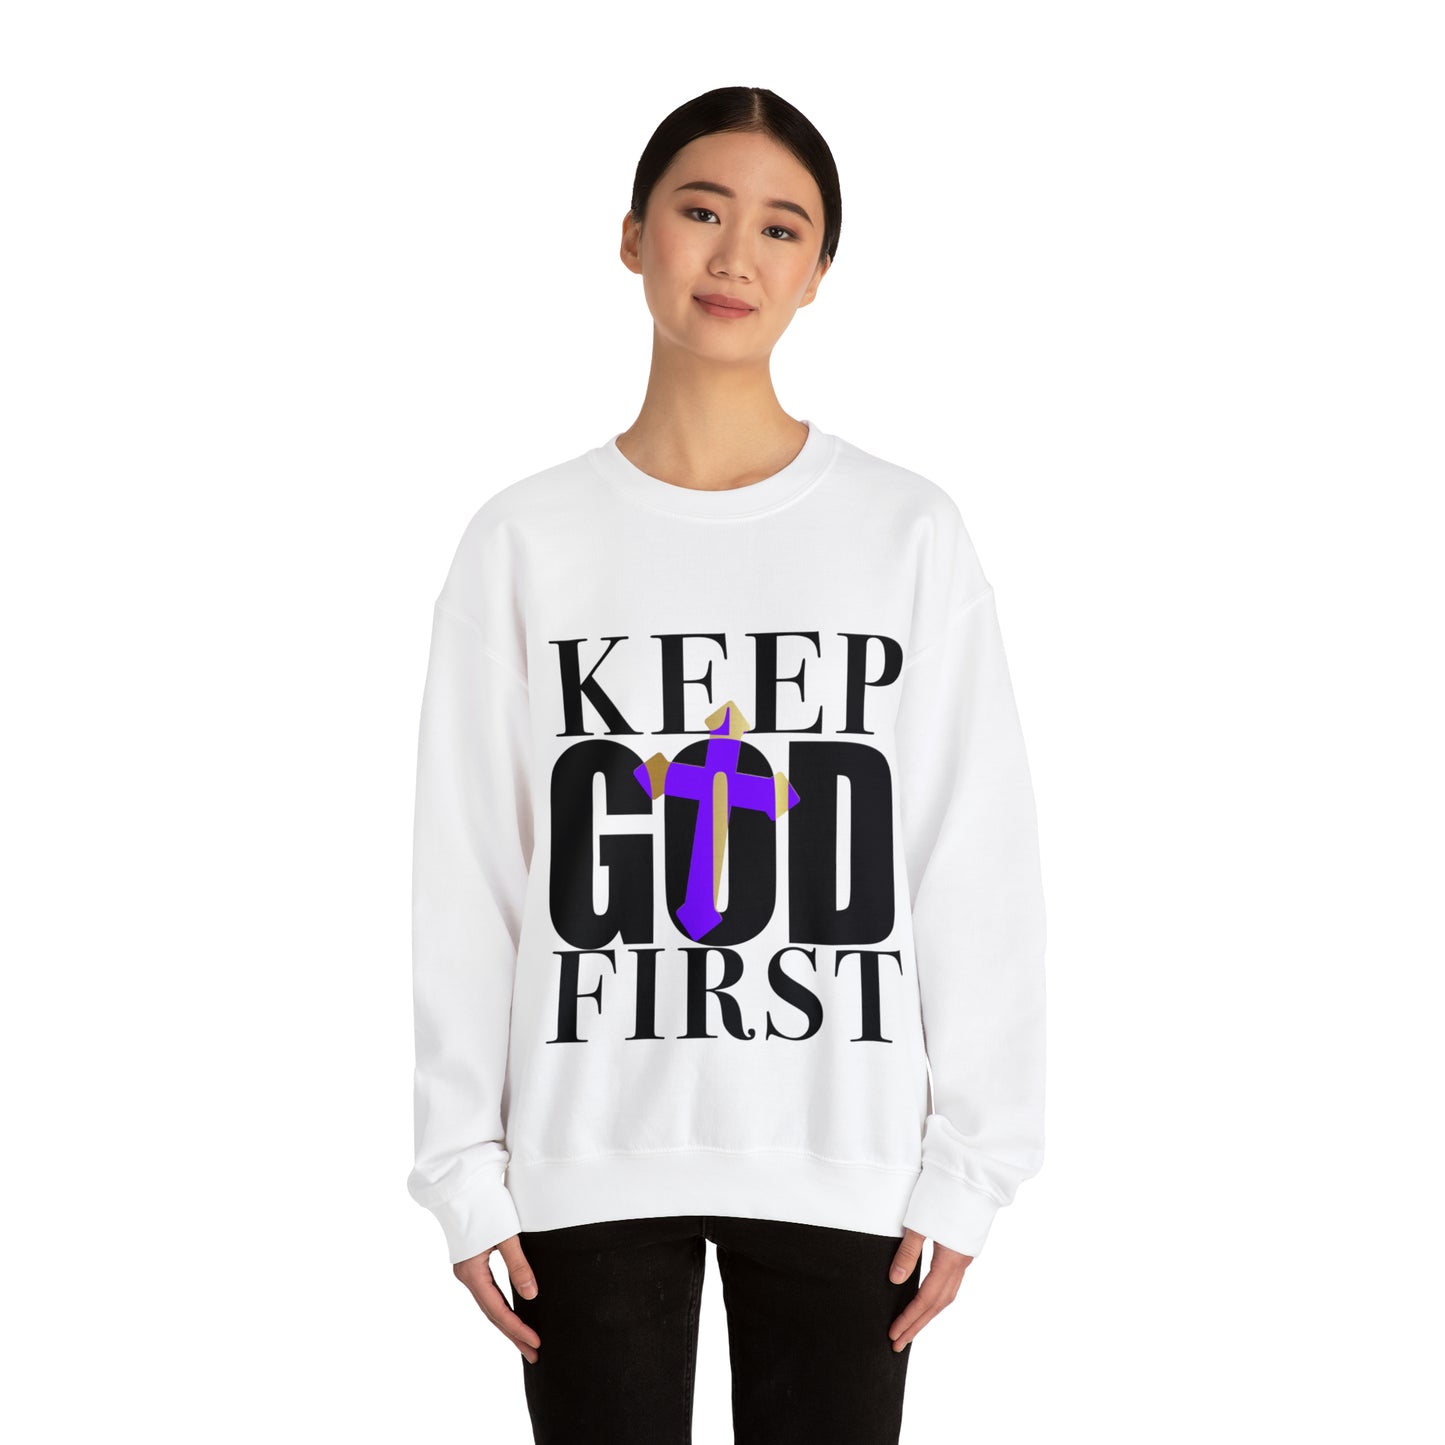 Keep God First - Sweatshirt